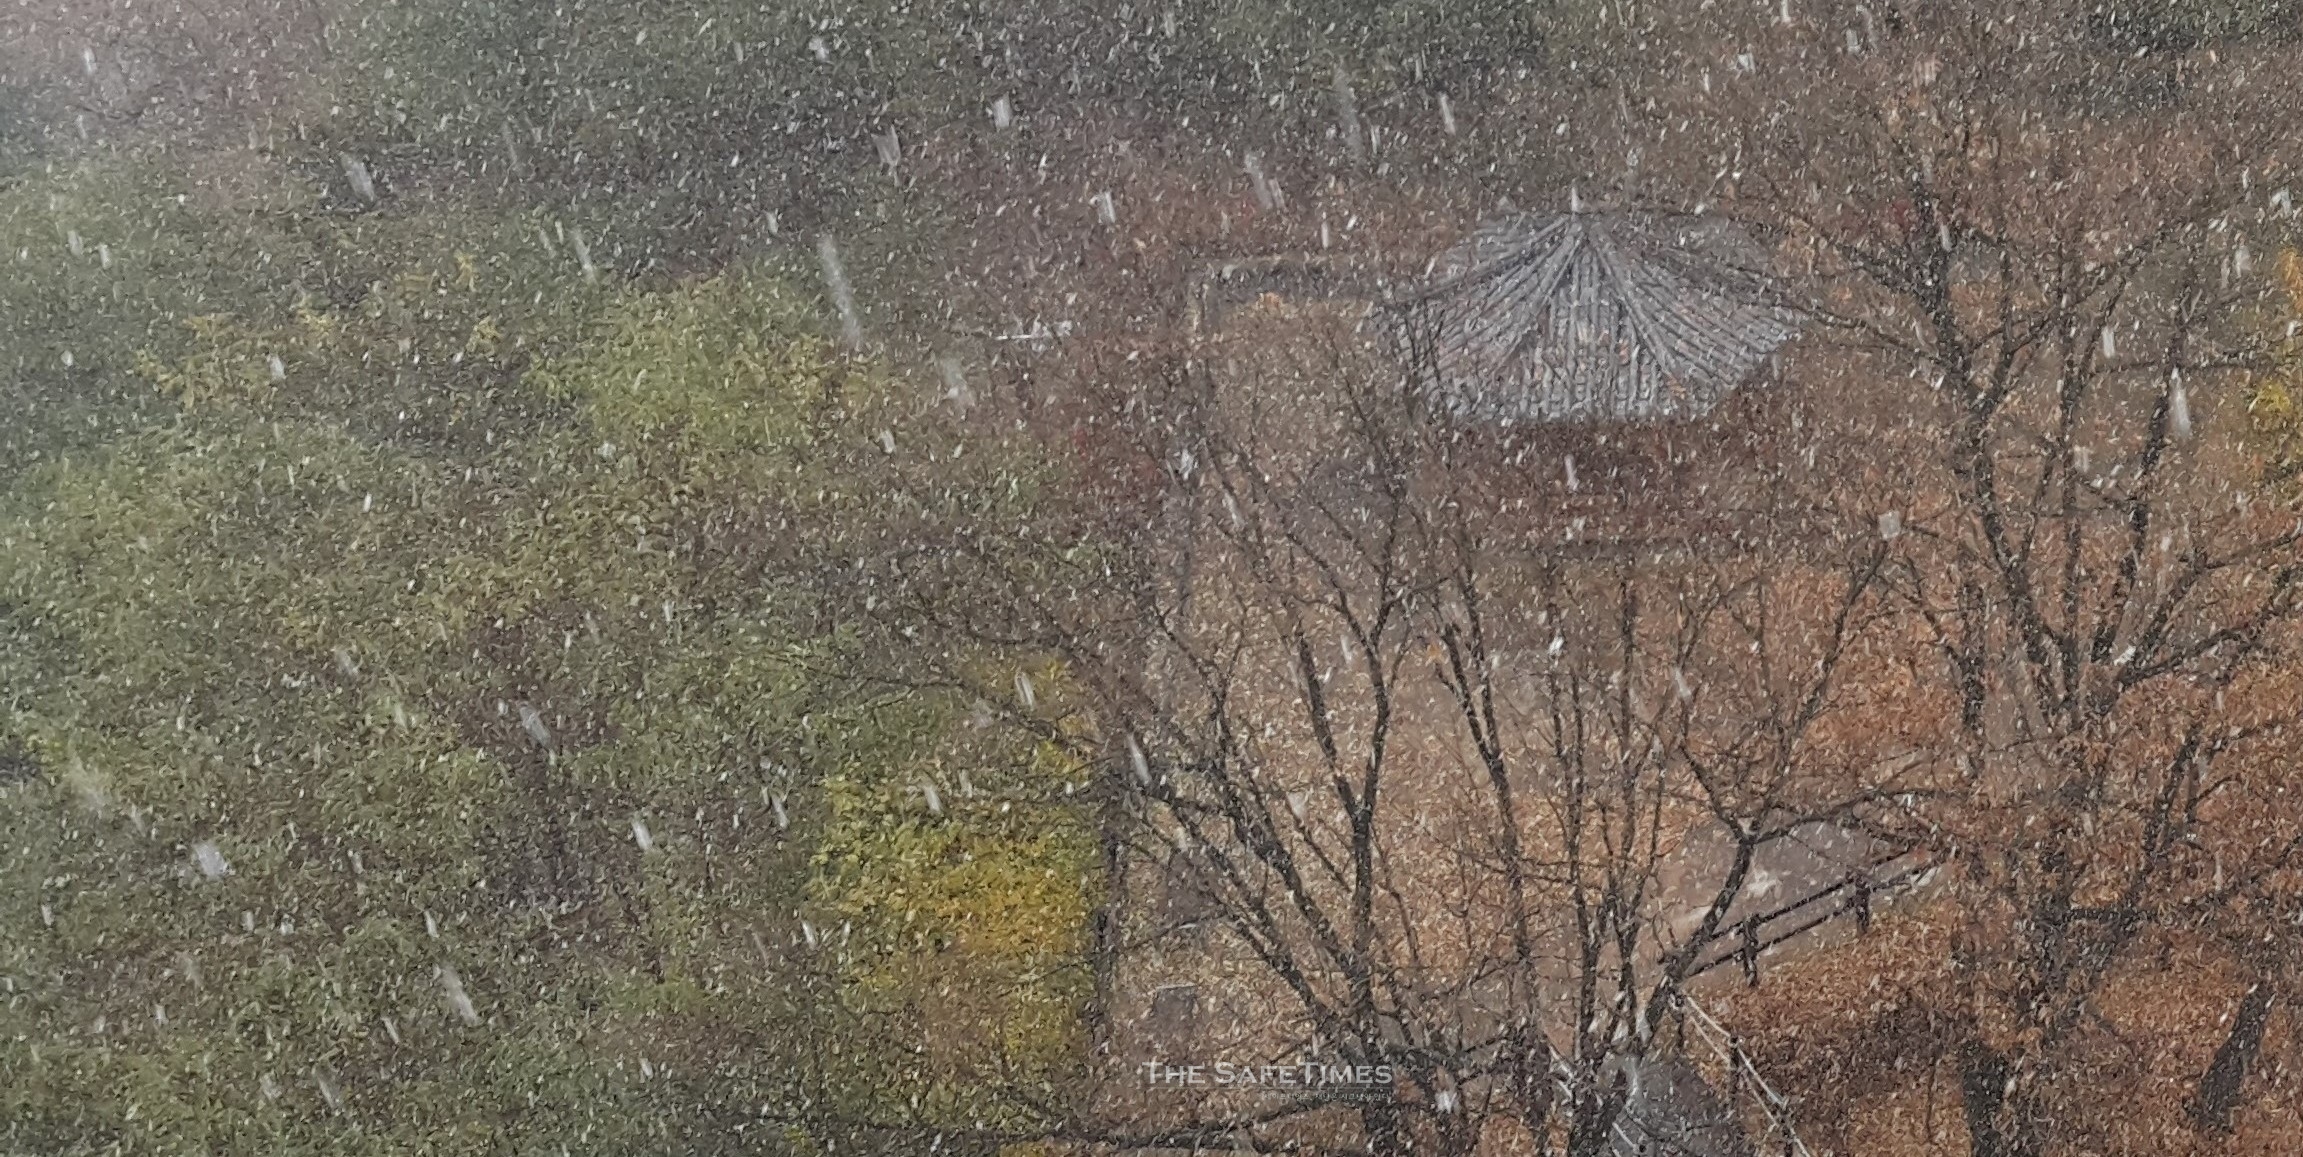 대전시 천동 휴먼시아 아파트 공원에 눈발이 날리고 있다. ⓒ 세이프타임즈 DB